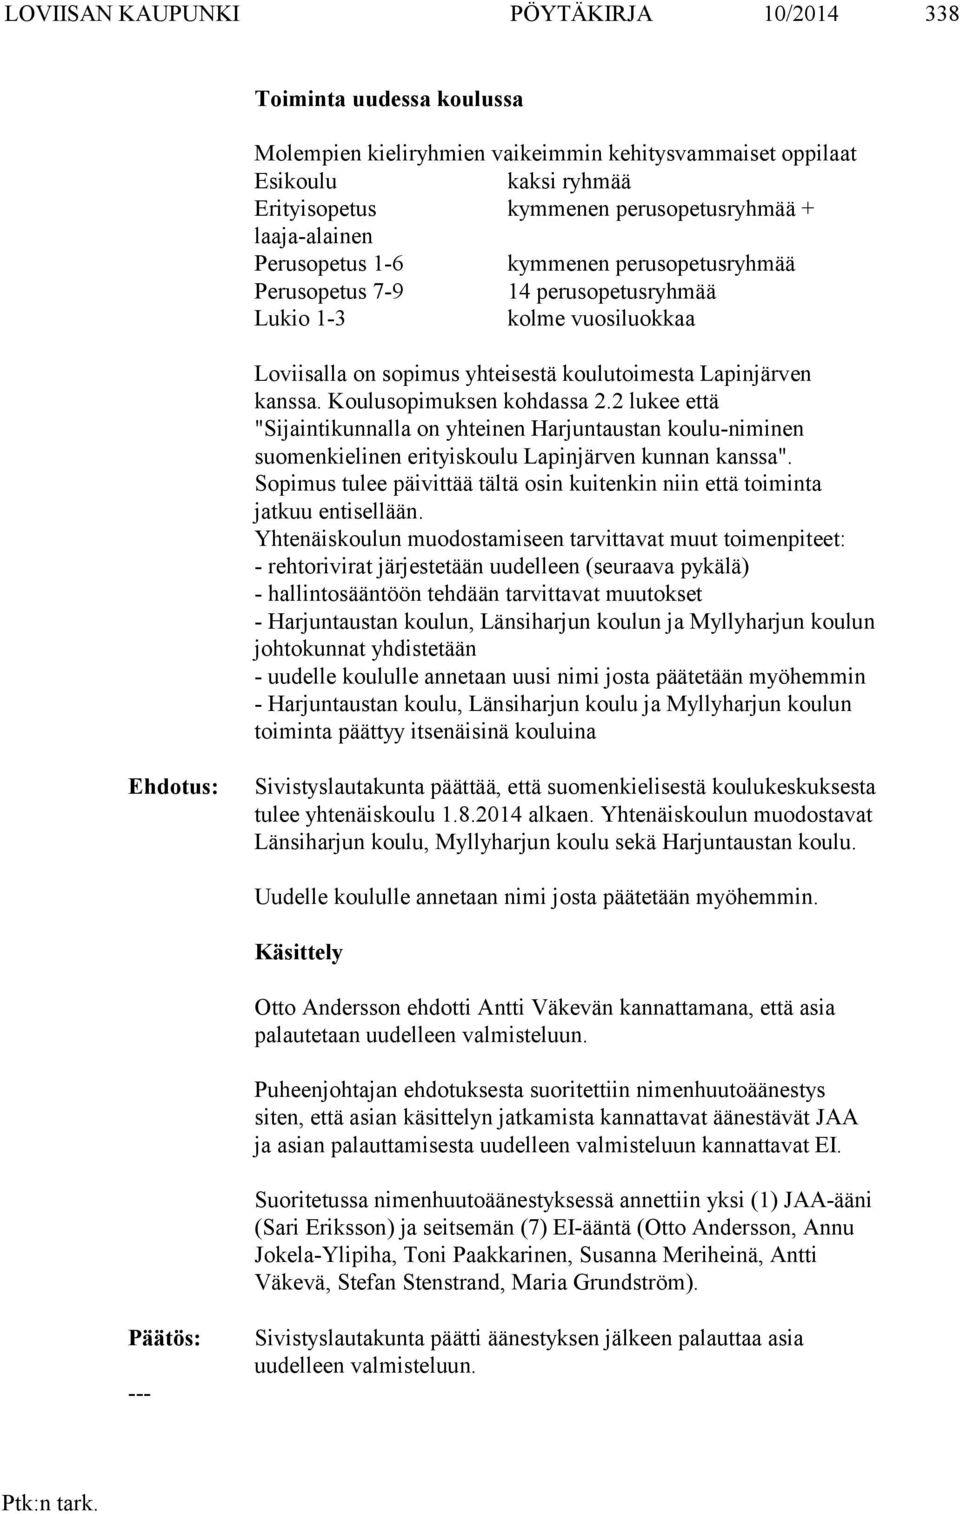 Koulusopimuksen kohdassa 2.2 lukee että "Sijaintikunnalla on yhteinen Harjuntaustan koulu-niminen suomenkielinen erityiskoulu Lapinjärven kunnan kanssa".